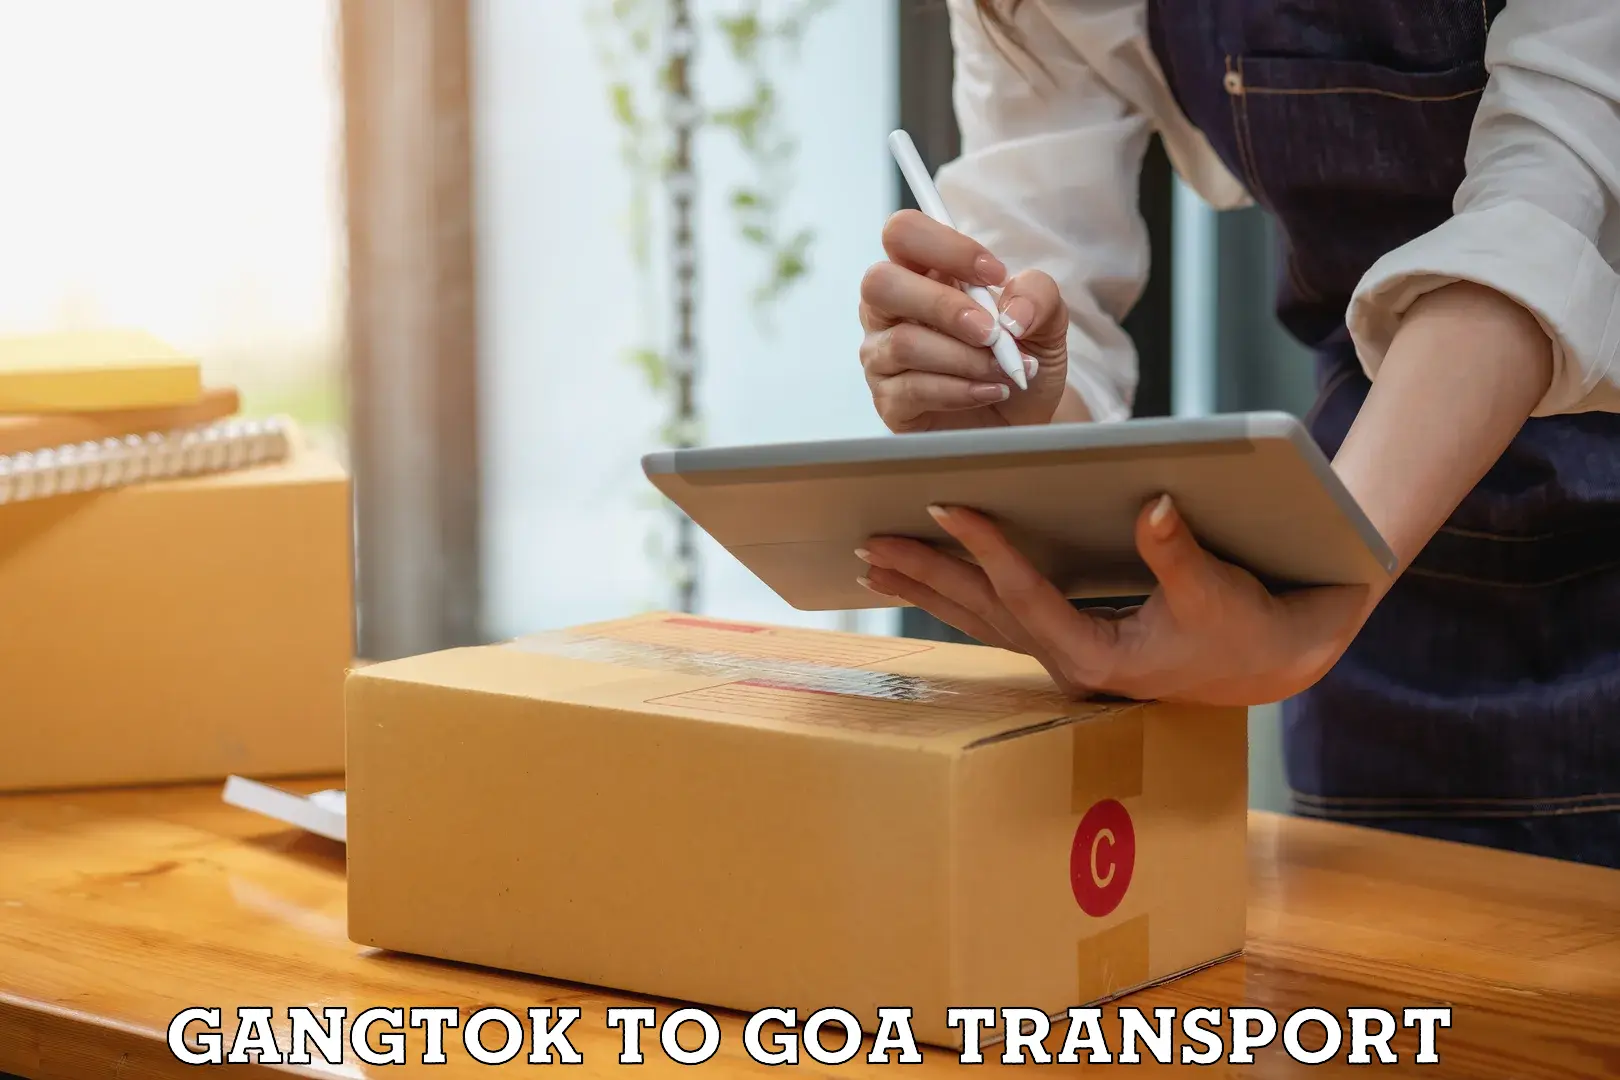 Road transport online services Gangtok to Mormugao Port